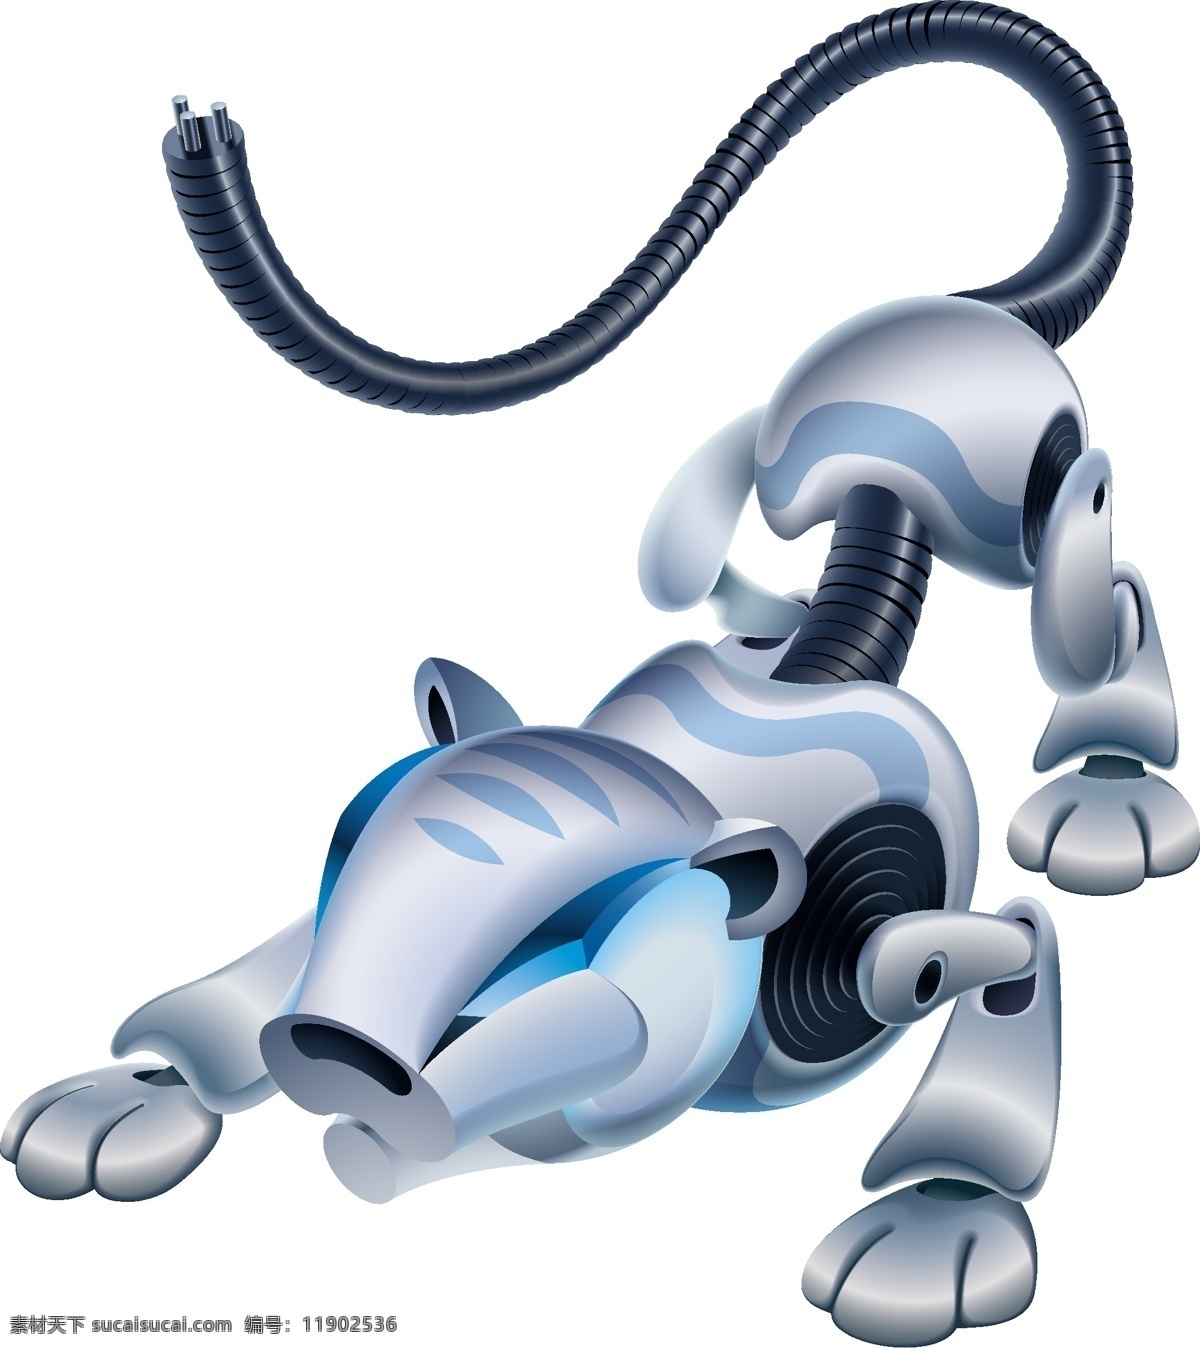 机器狗 现代科技 创意 创想 手绘 科技背景 卡通动漫 卡通机器人 科技时代 商务 科技 3d机器人 3d设计 白色